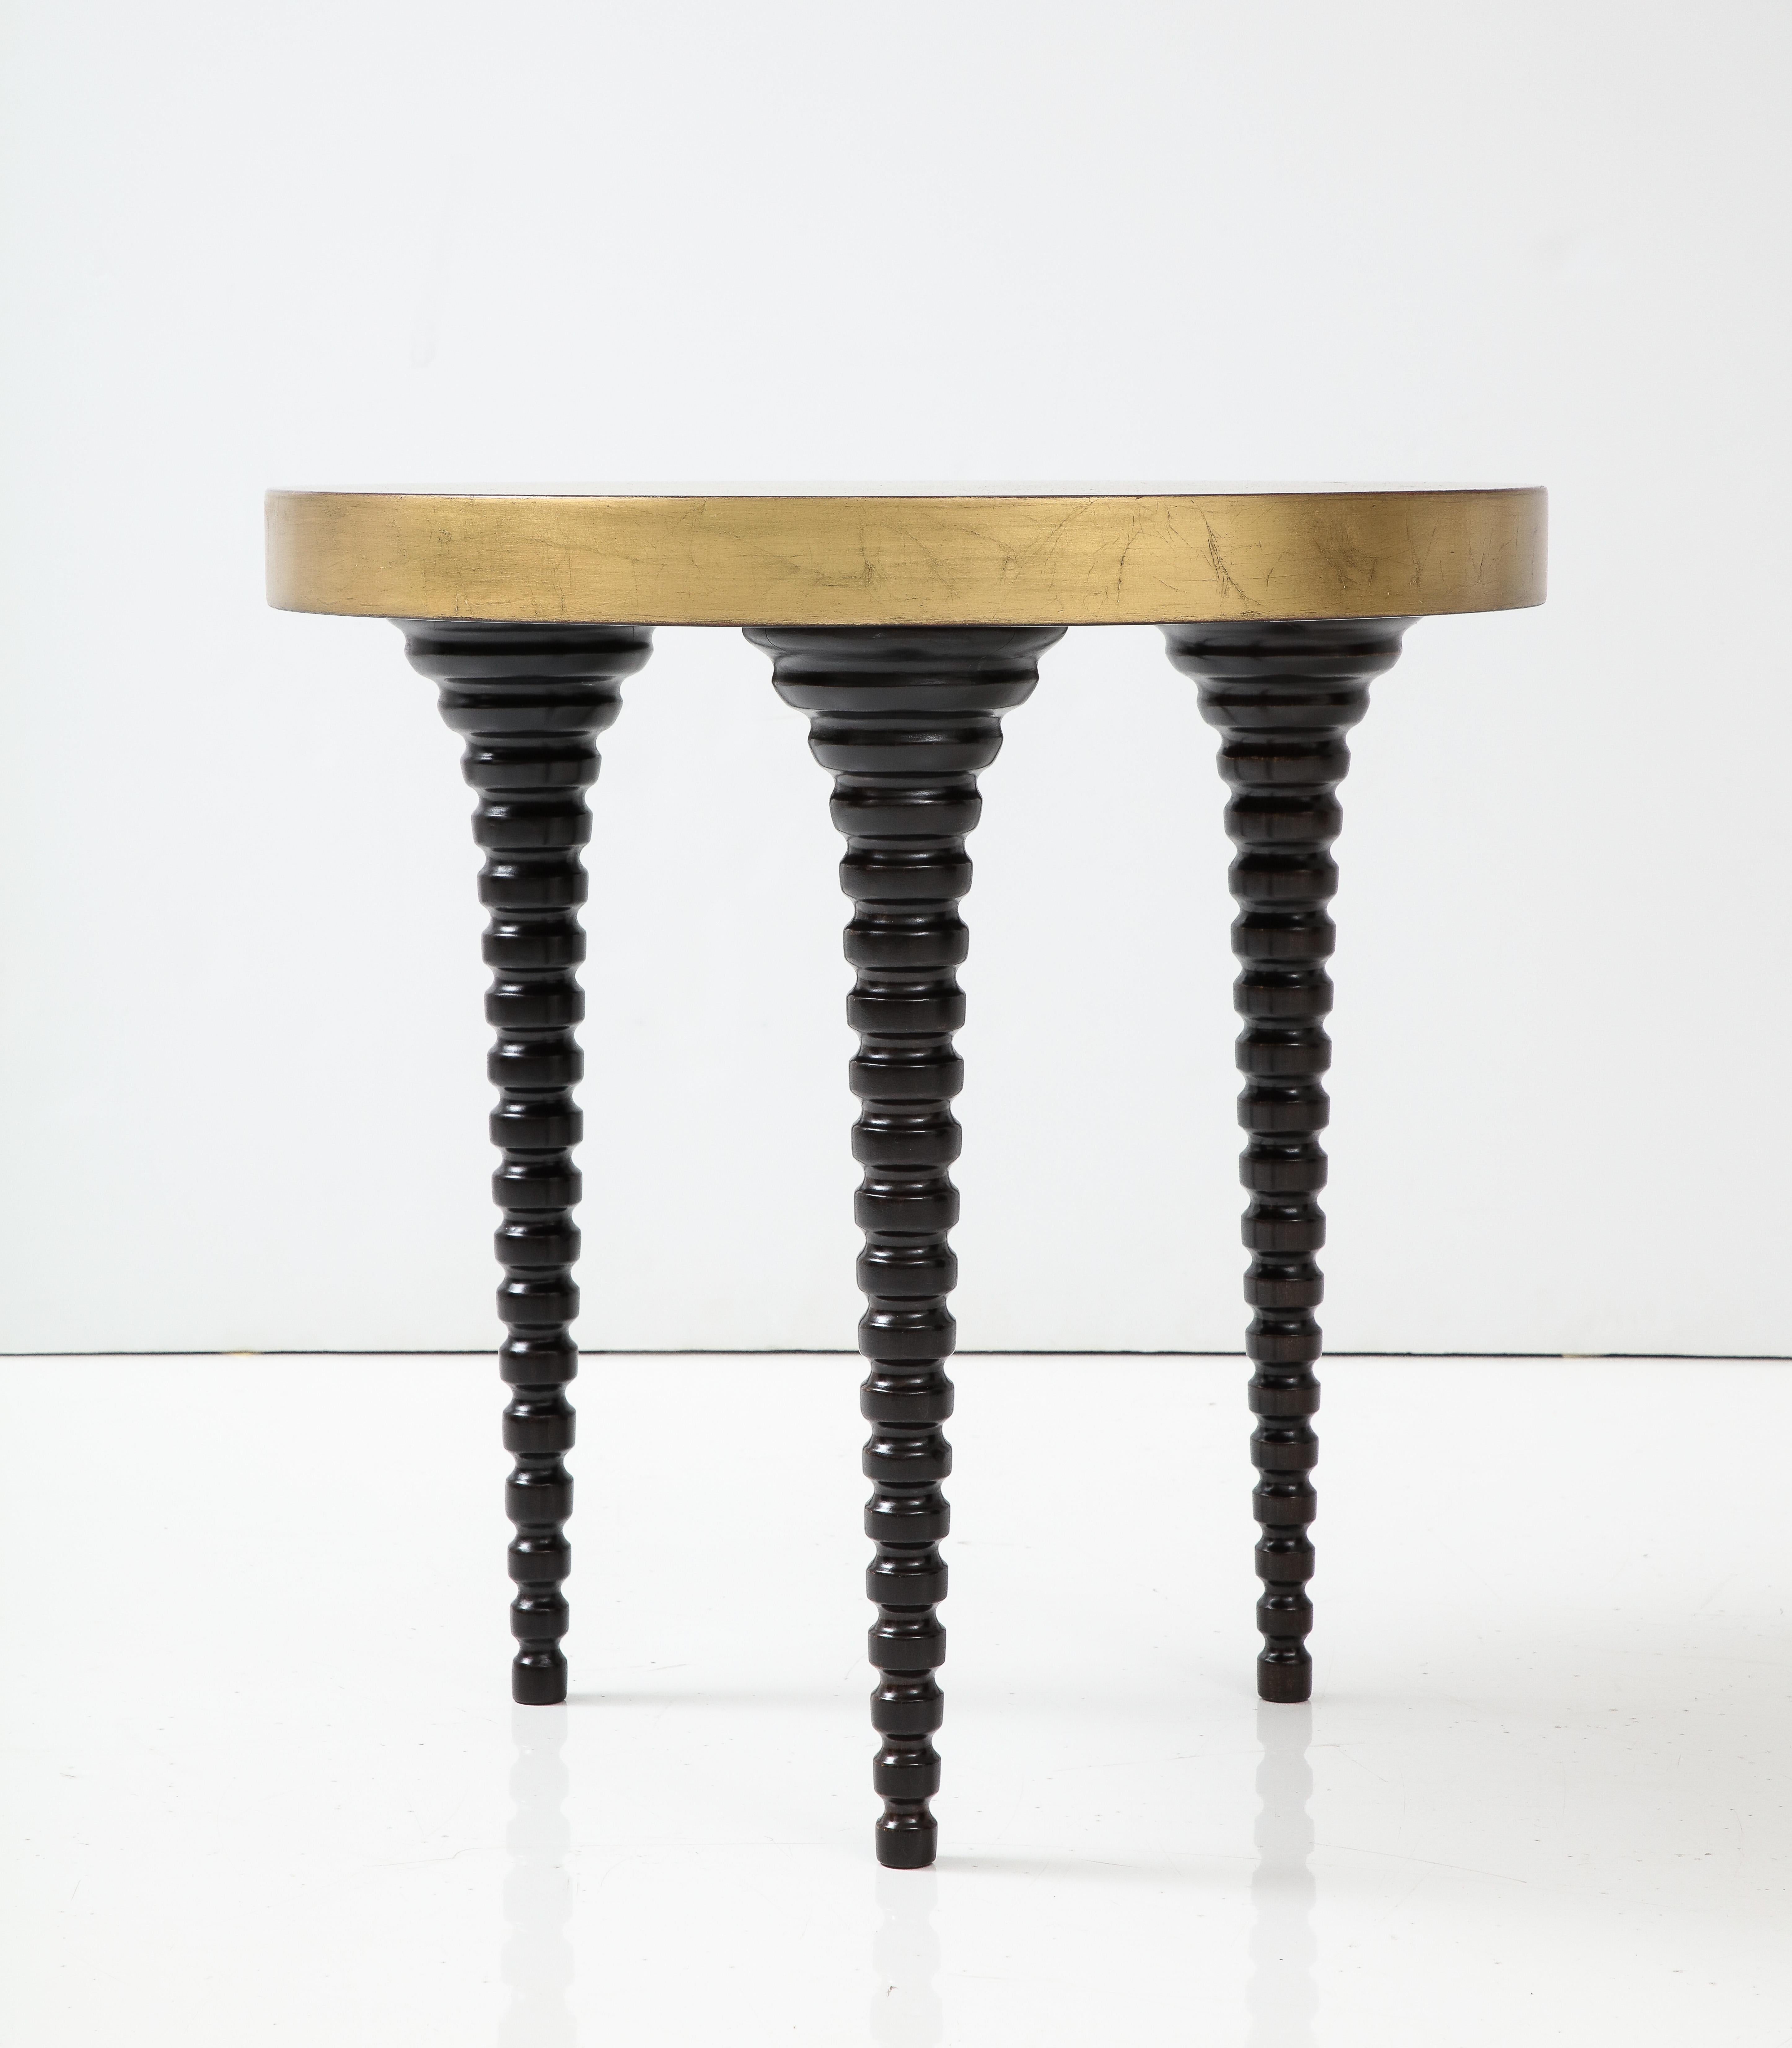 Table à pieds en bois tourné qui a été magnifiquement restaurée.
Les pieds de la table sont d'une riche finition espresso qui s'harmonise avec le plateau émaillé et doré.